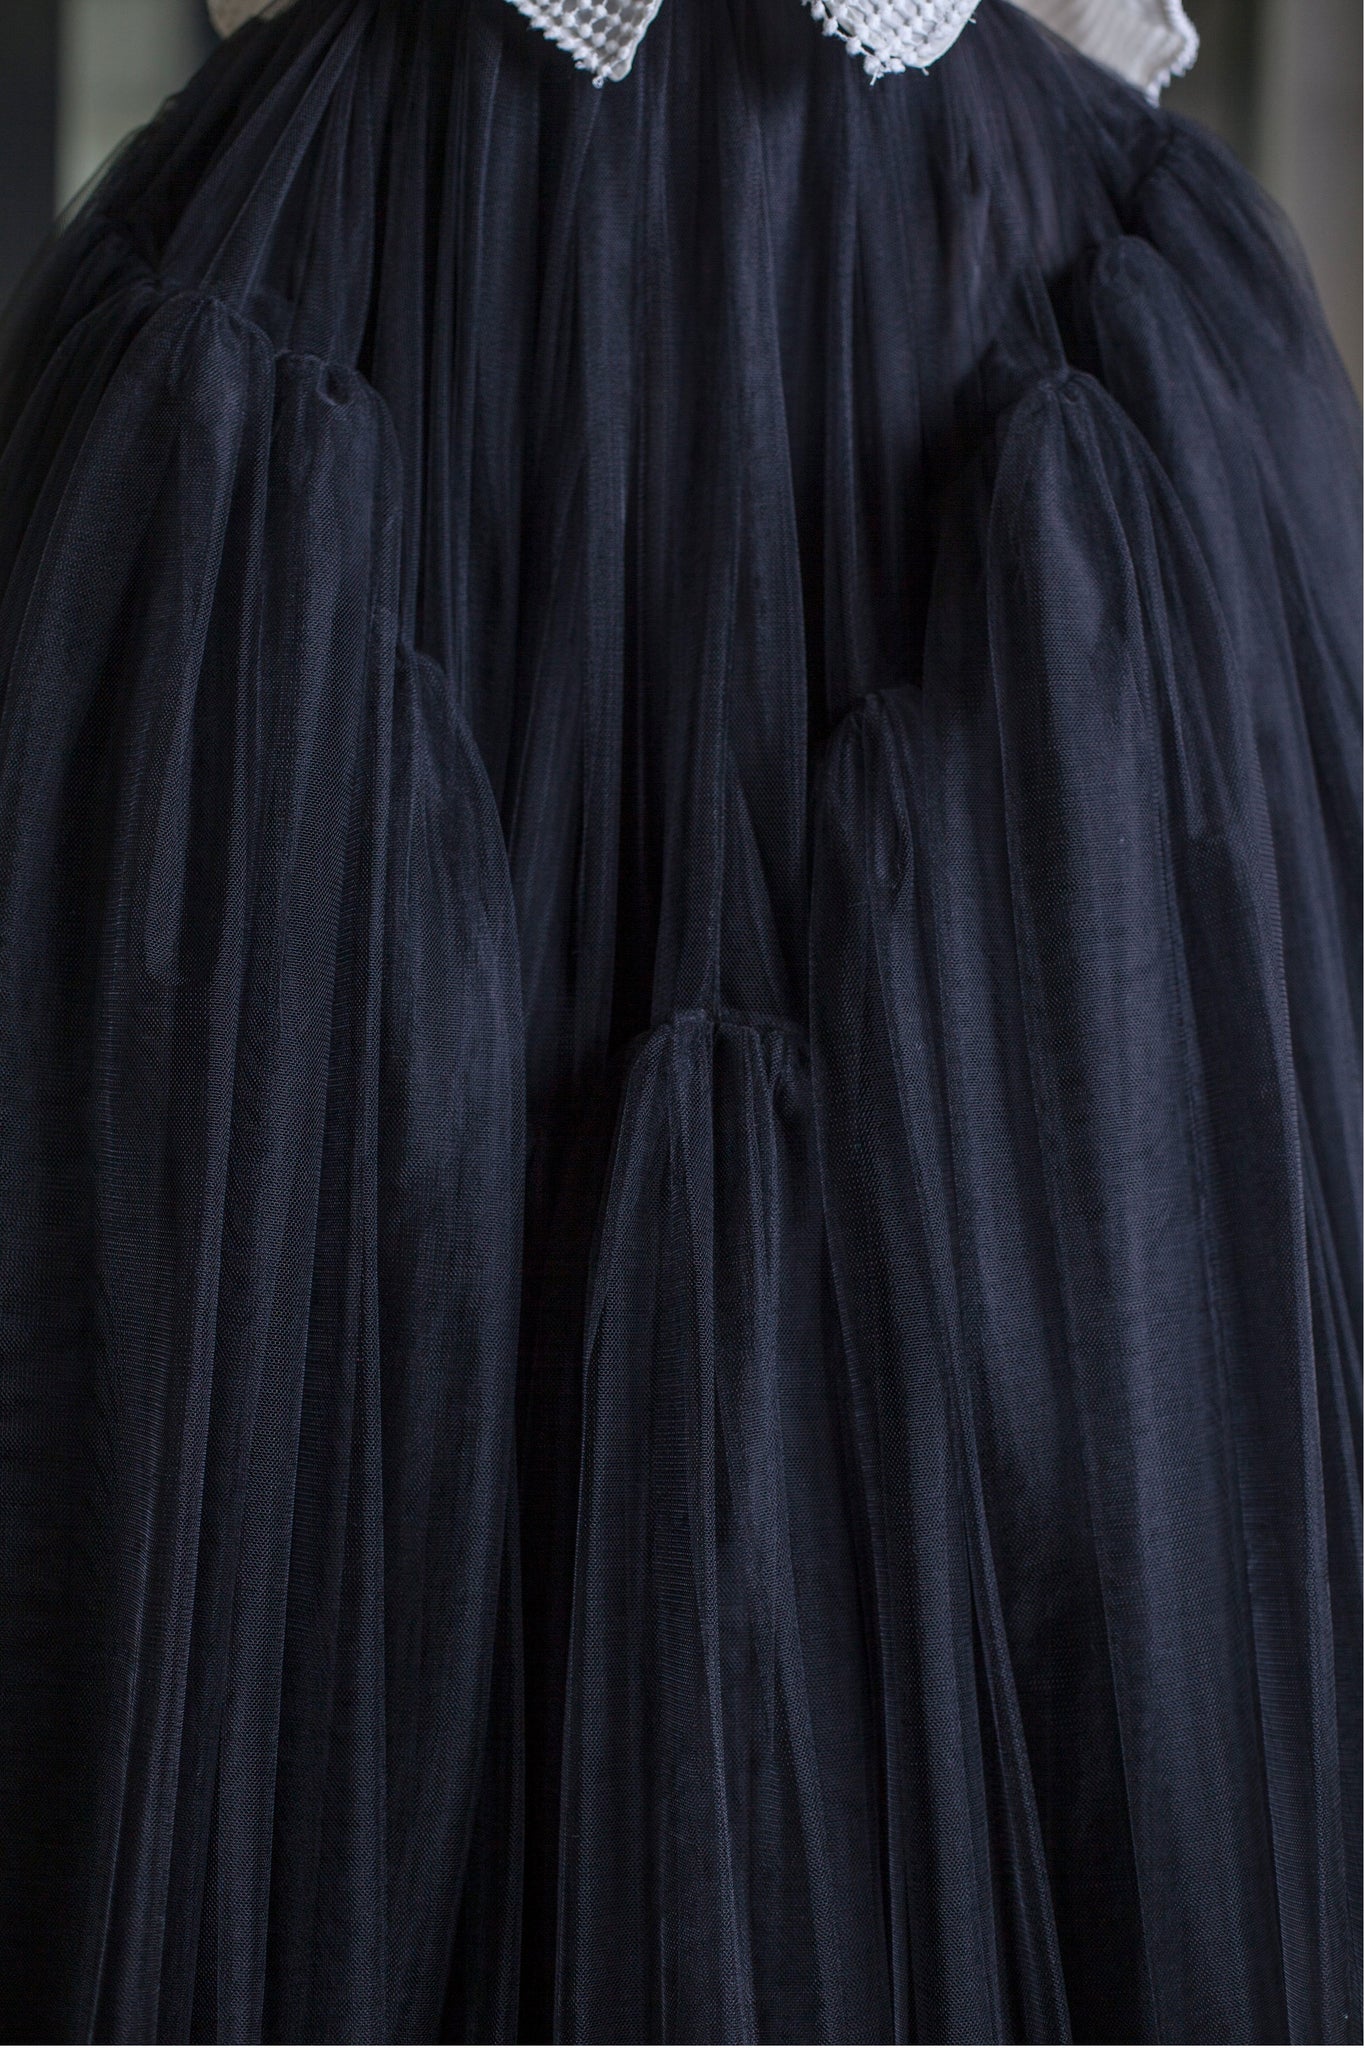 Black Tutu Skirt - LARAKHOURY